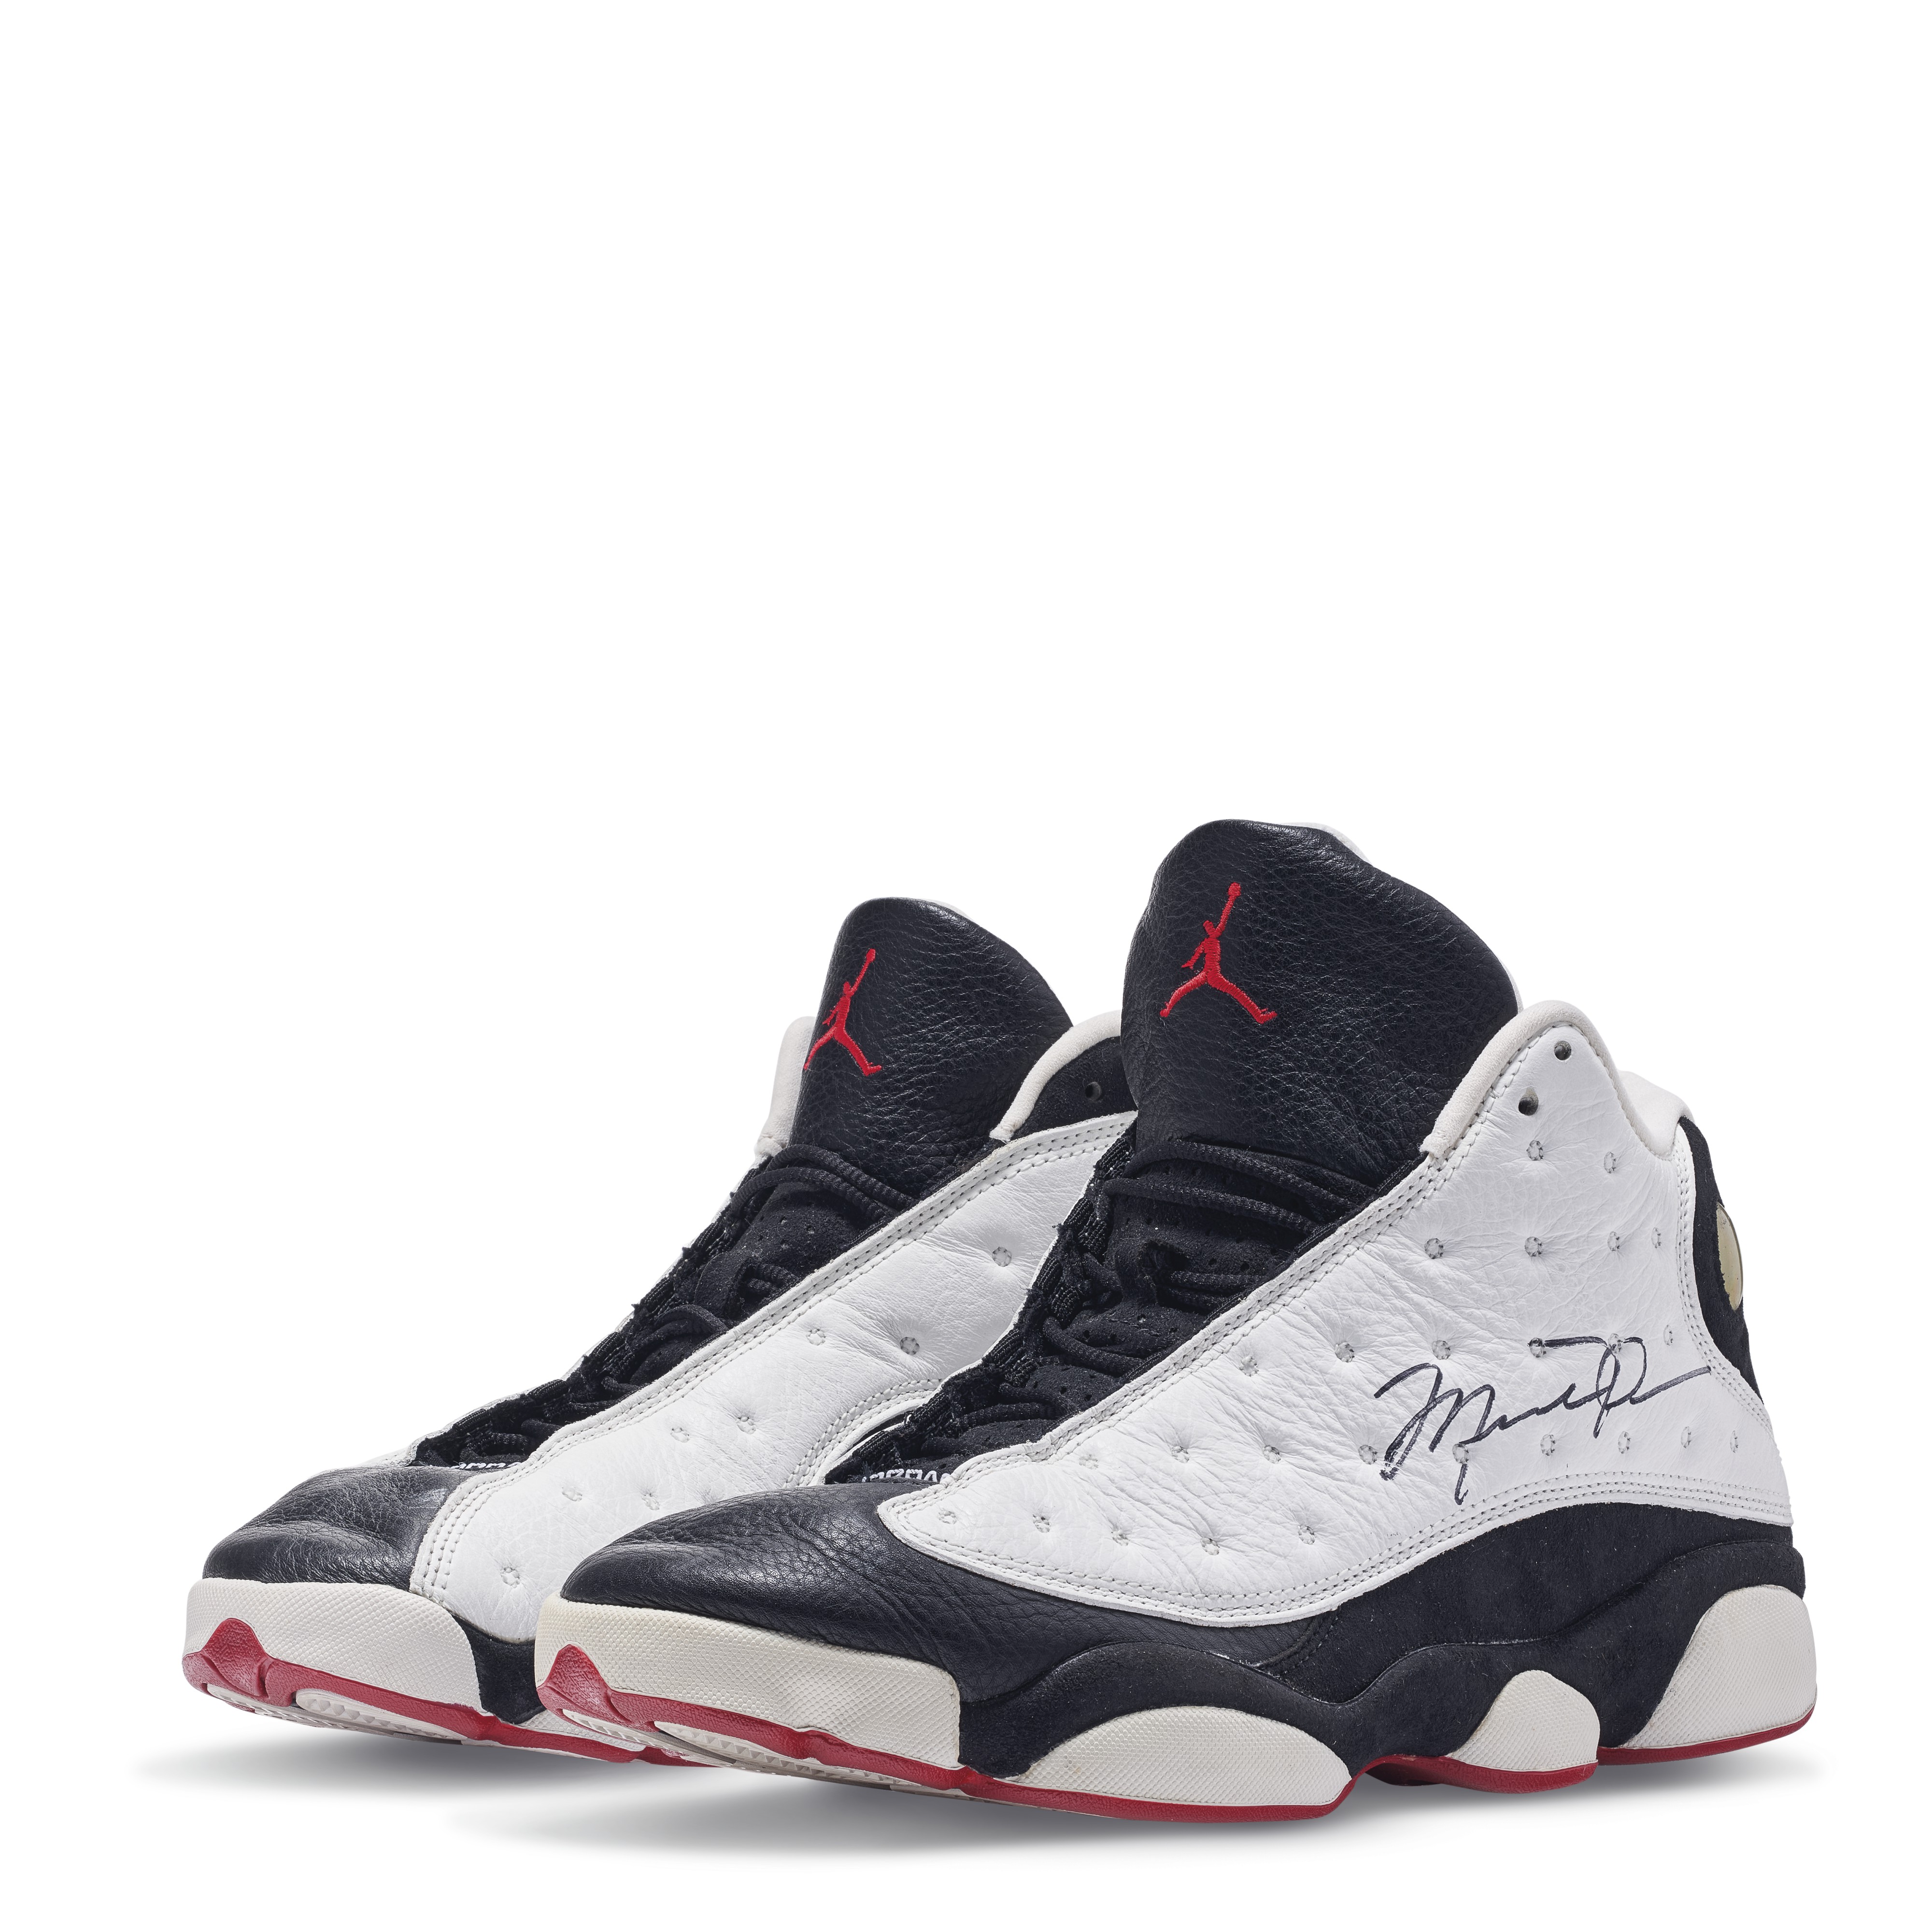 Michael Jordan "He's Got Game" Air Jordan sneakers